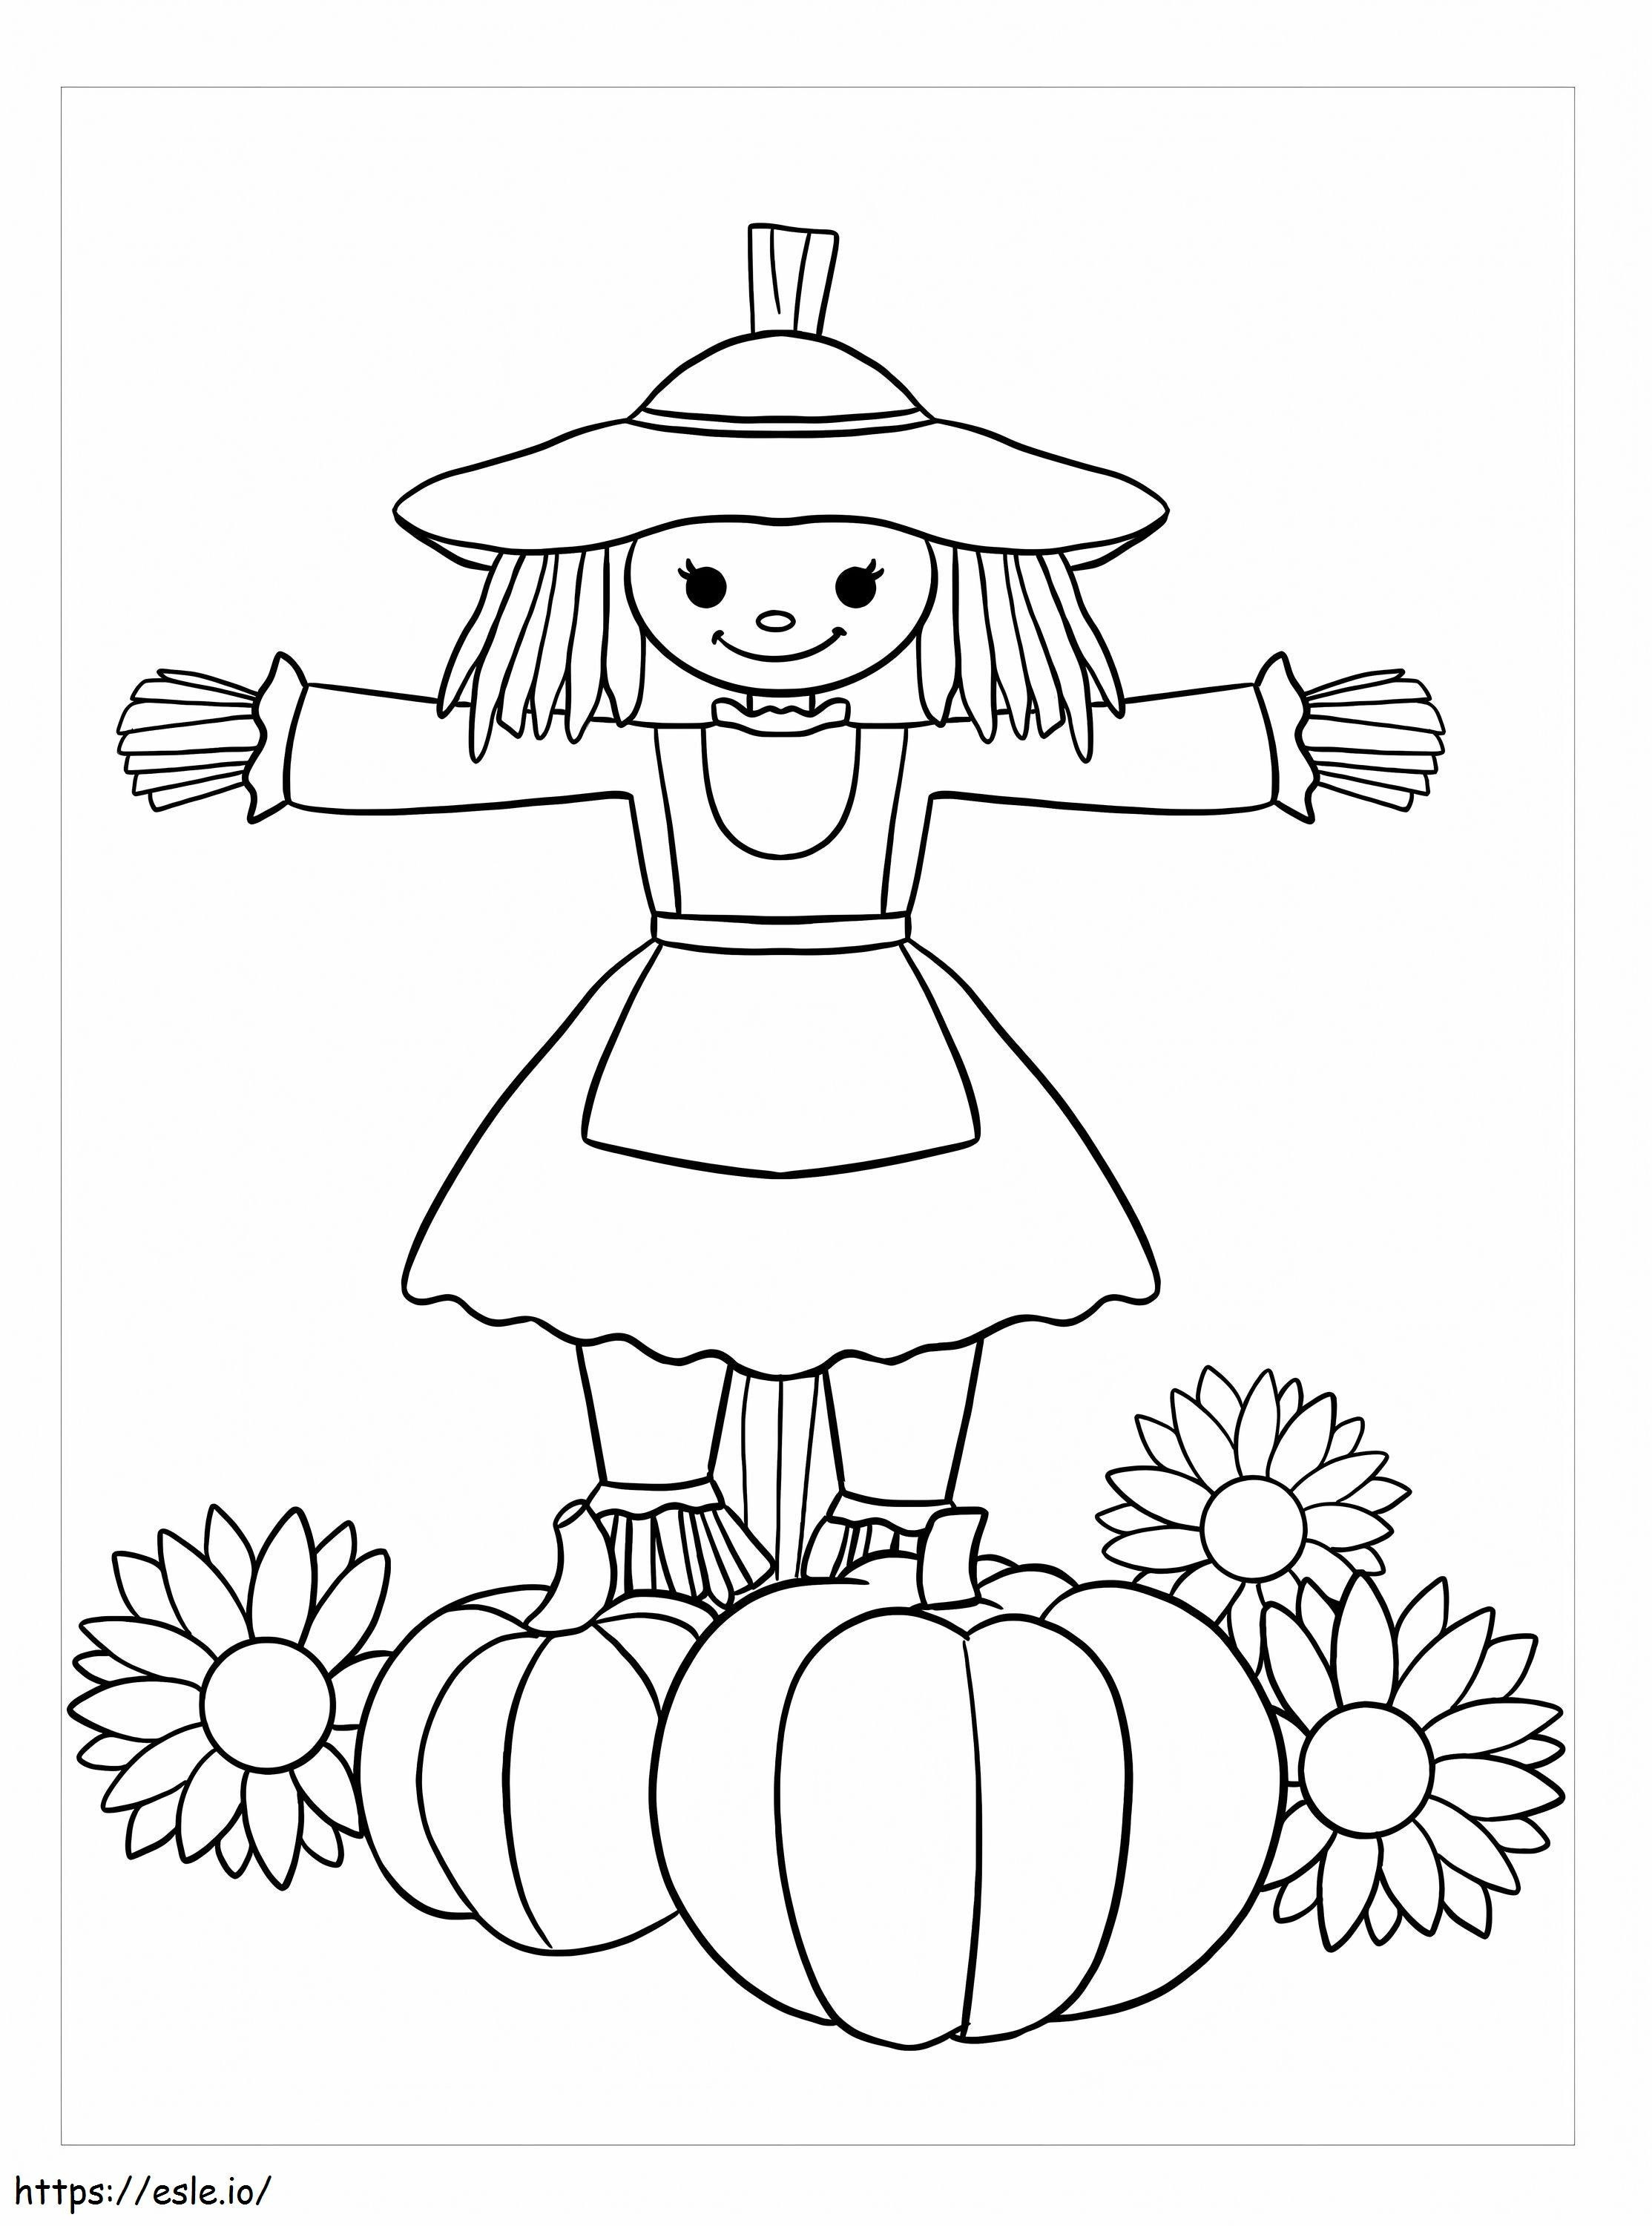 Espantalho menina com abóbora e flor para colorir